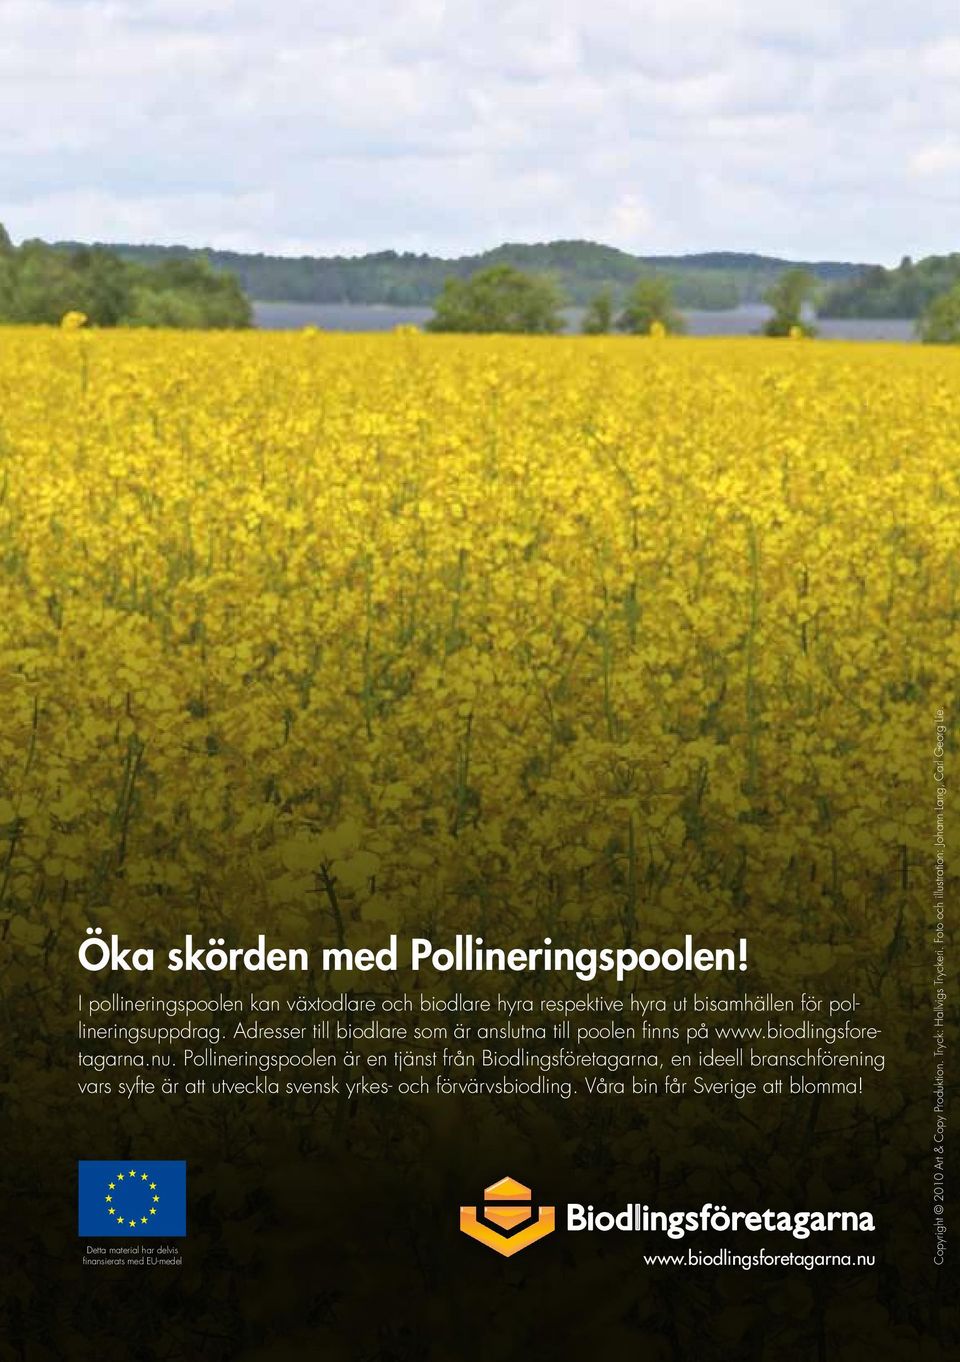 Pollineringspoolen är en tjänst från Biodlingsföretagarna, en ideell branschförening vars syfte är att utveckla svensk yrkes- och förvärvsbiodling.